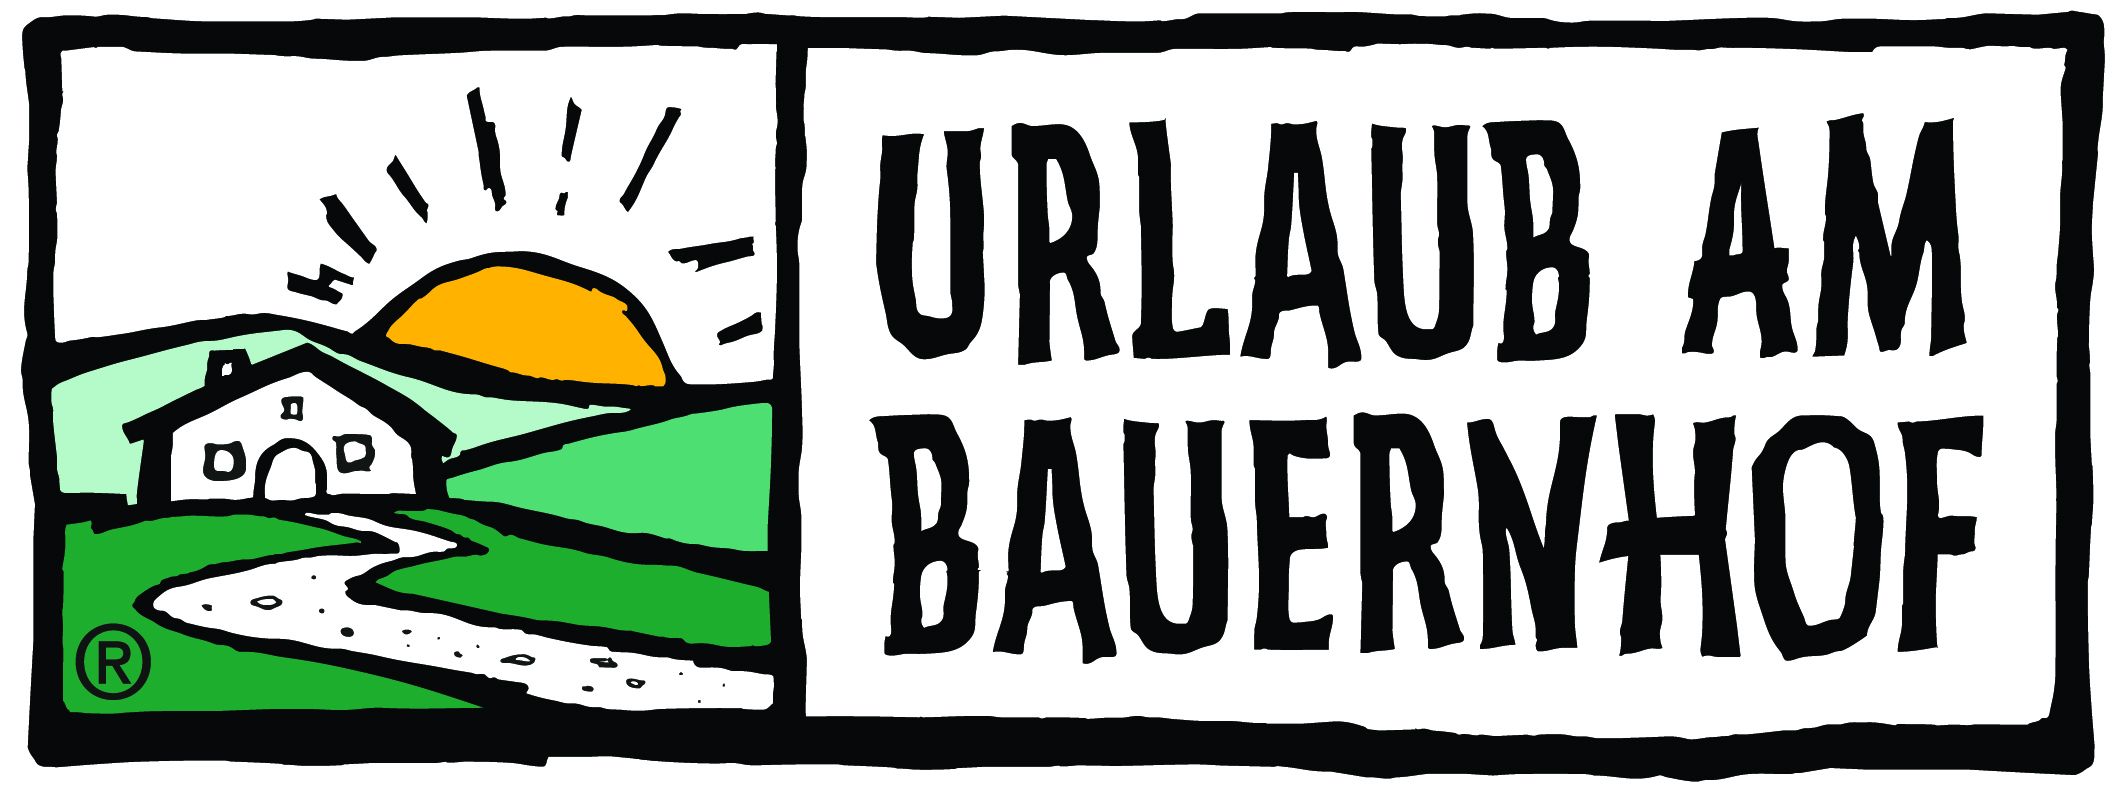 Landesverband für Uralub am Bauernhof und Privatzimmervermietung in Niederösterreich